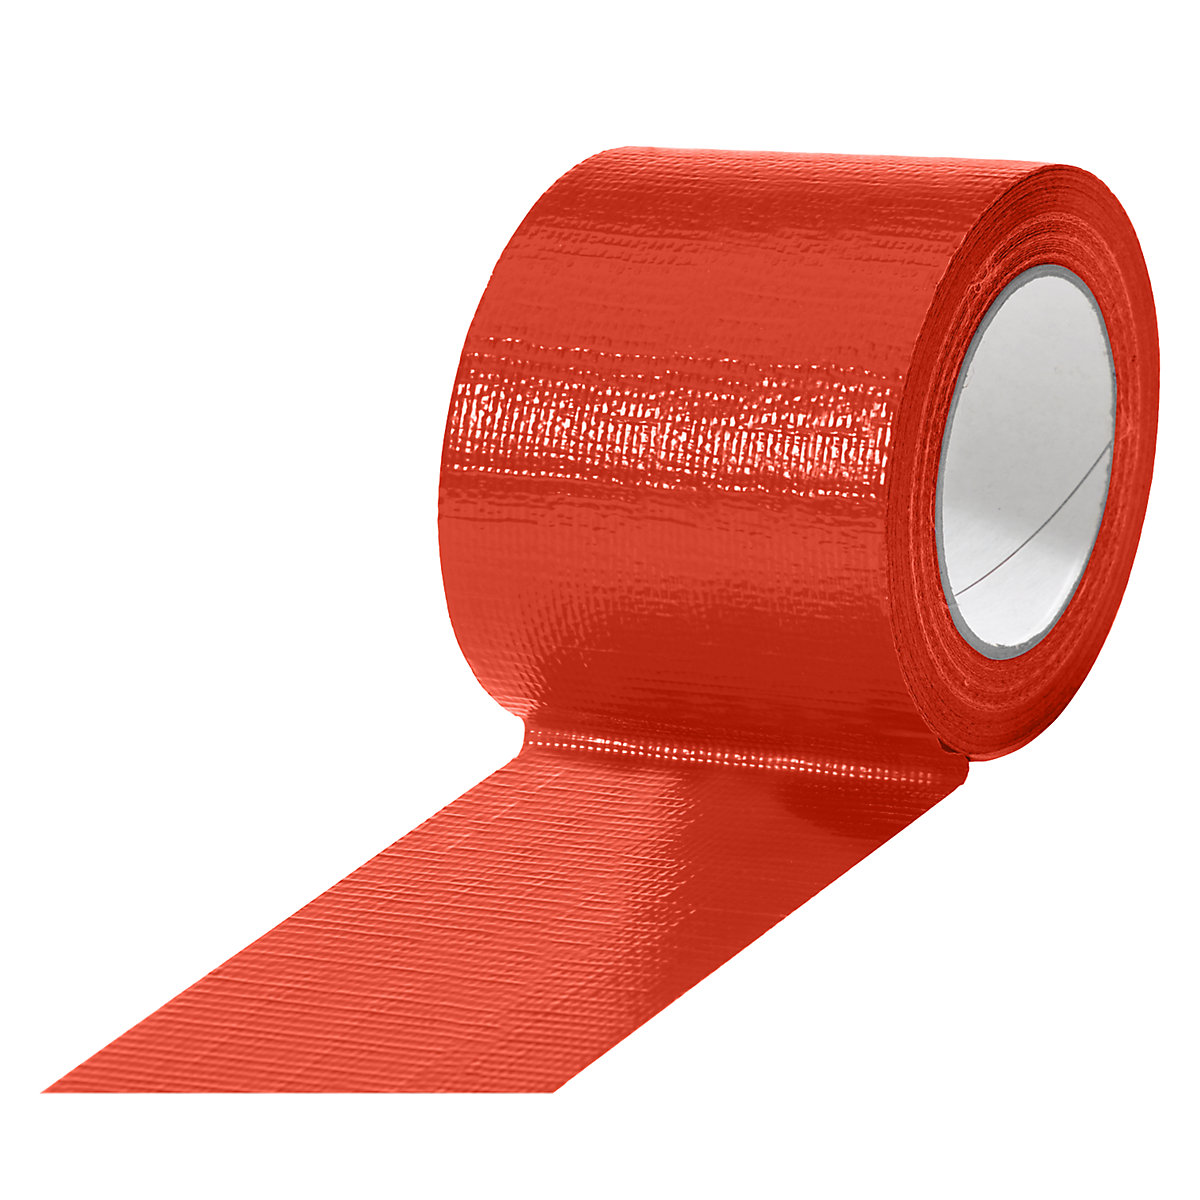 Gewebeband, in verschiedenen Farben, VE 12 Rollen, rot, Bandbreite 75 mm-18